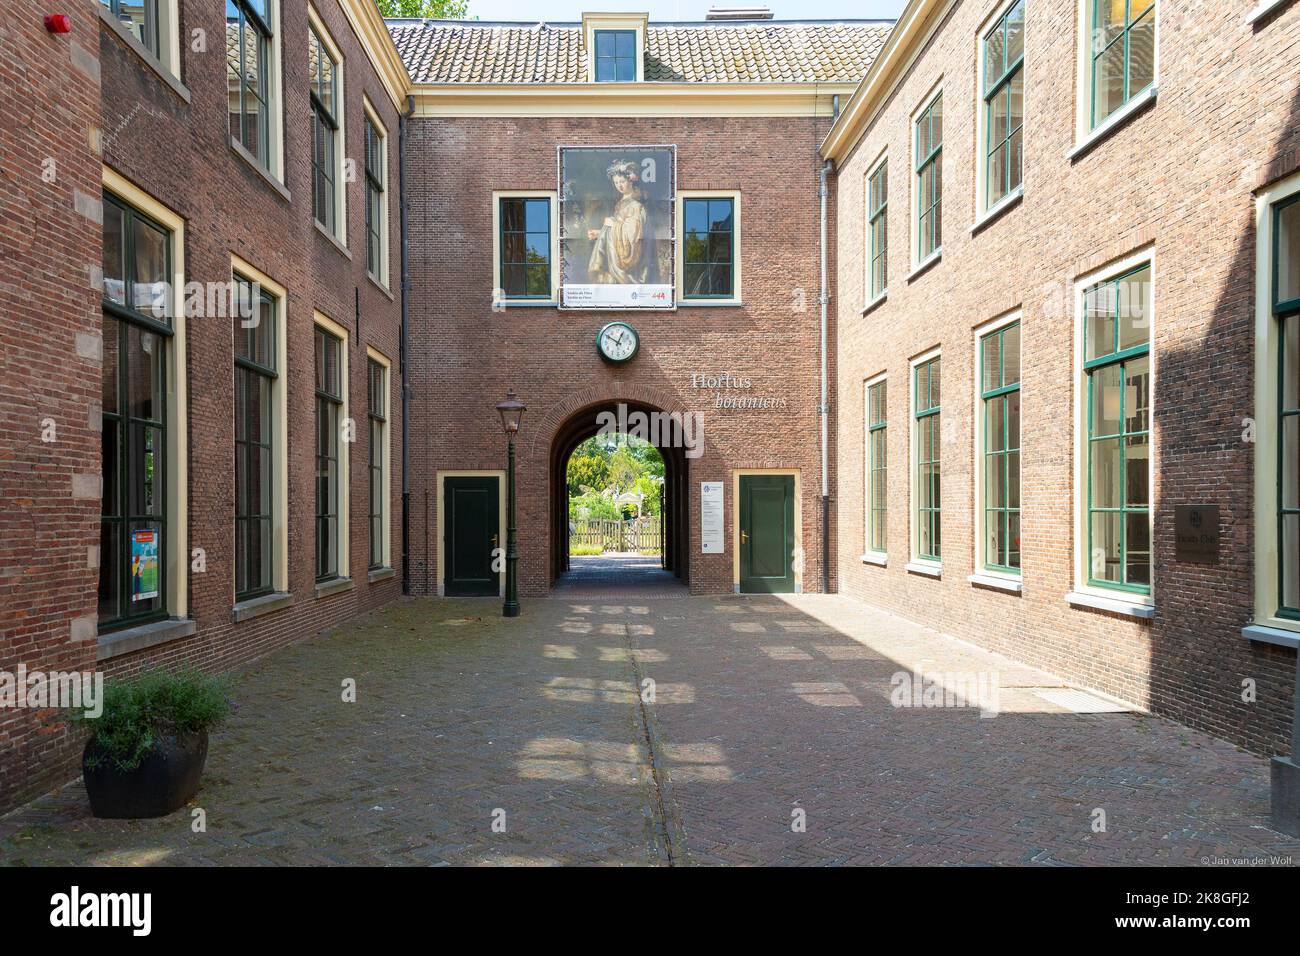 Eintritt zum Hortus botanicus in der niederländischen Stadt Leiden. Stockfoto